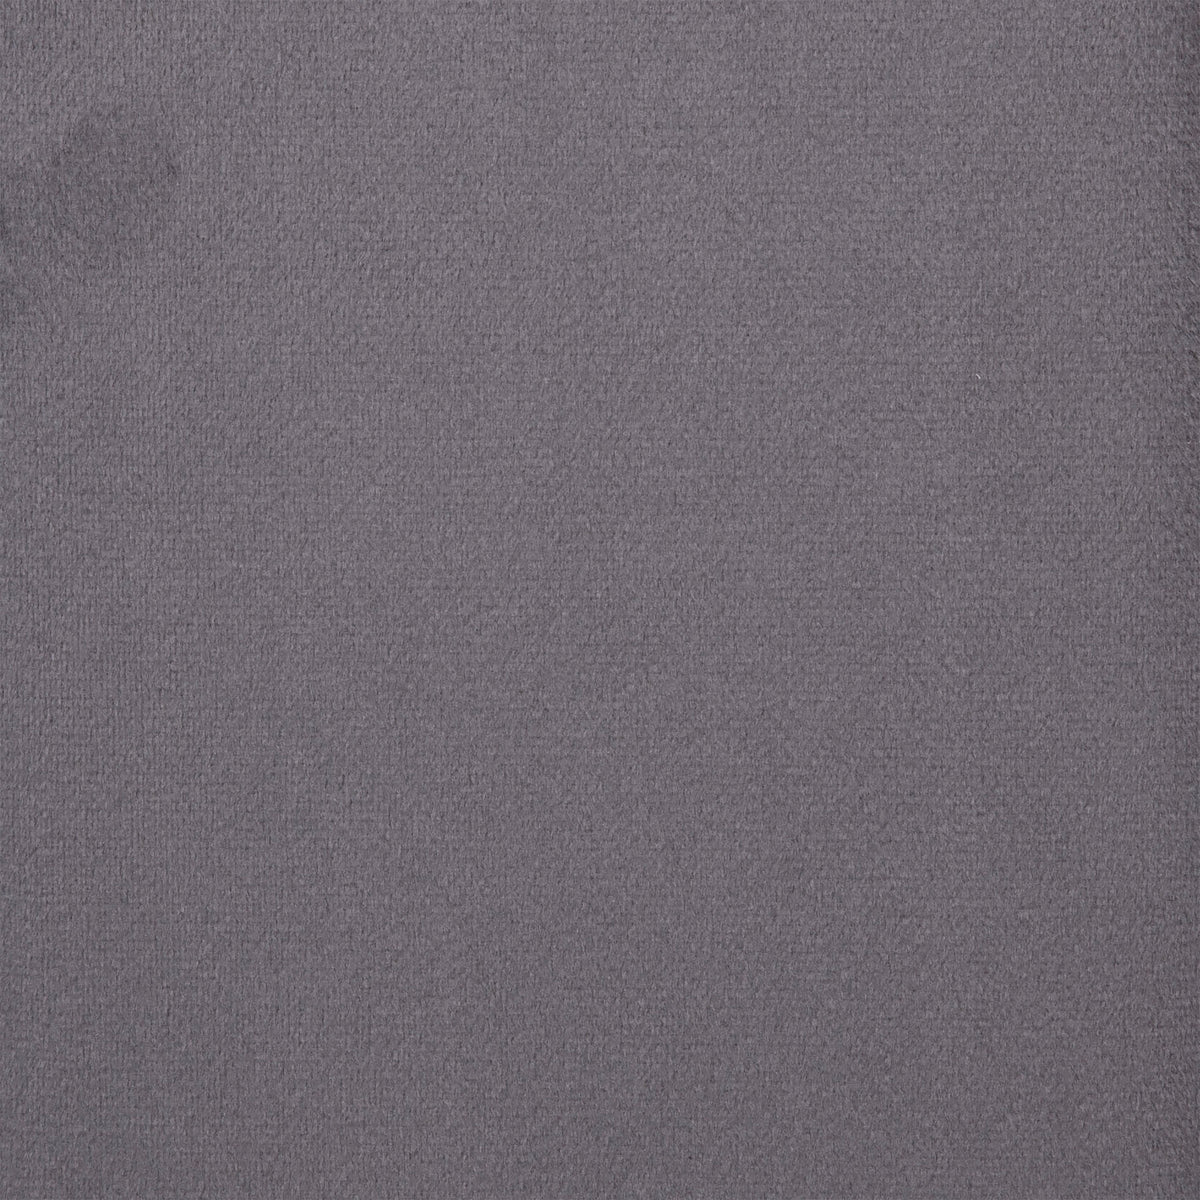 Gray Velvet,King |#| King Size Upholstered Platform Bed with Wingback Headboard - Gray Velvet